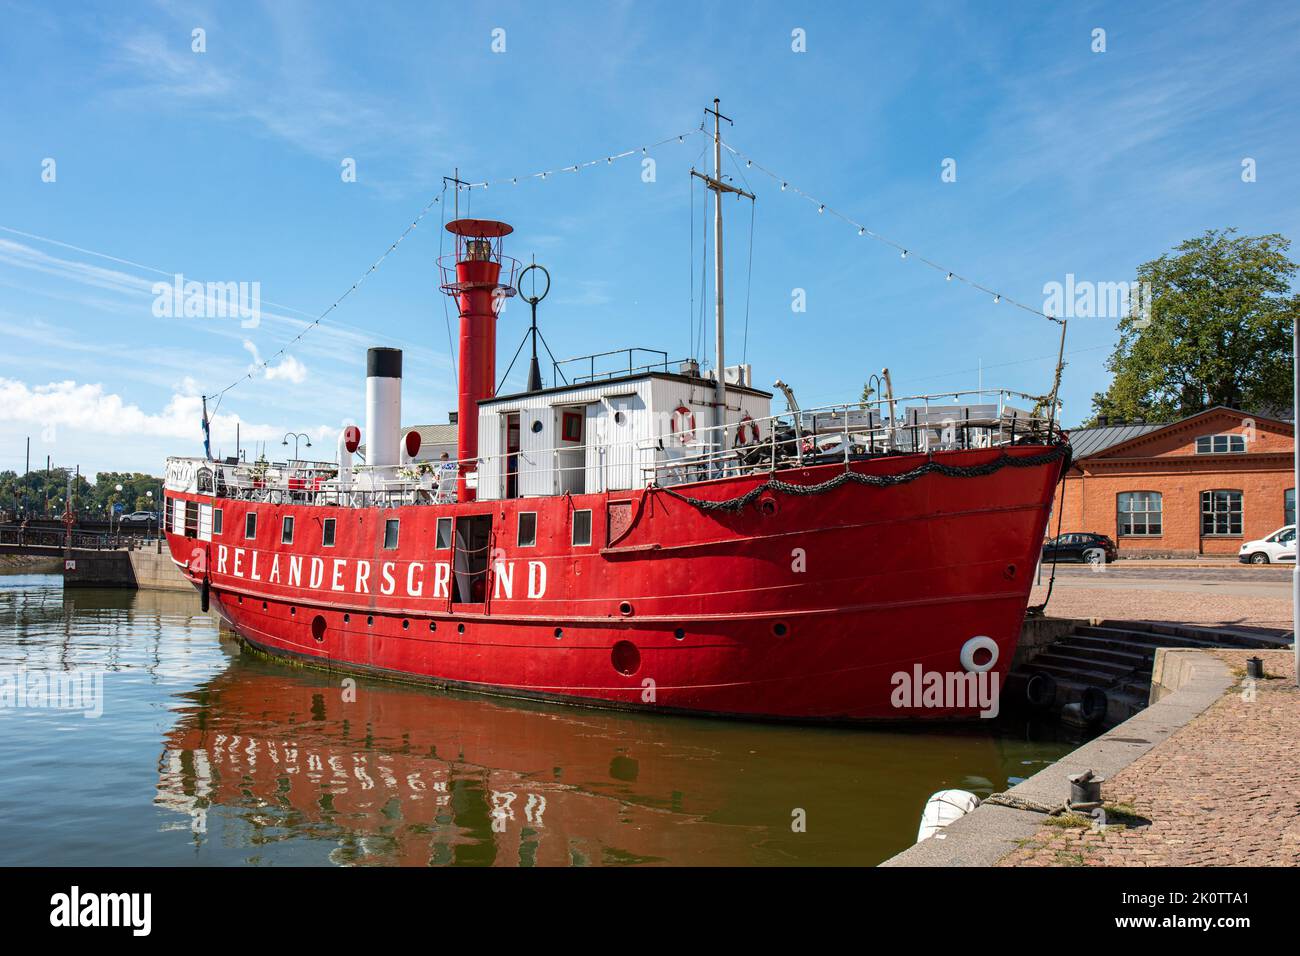 El barco restaurante Relandersgrund, antiguamente un barco de luz, en el distrito Kruununhaka de Helsinki, Finlandia Foto de stock